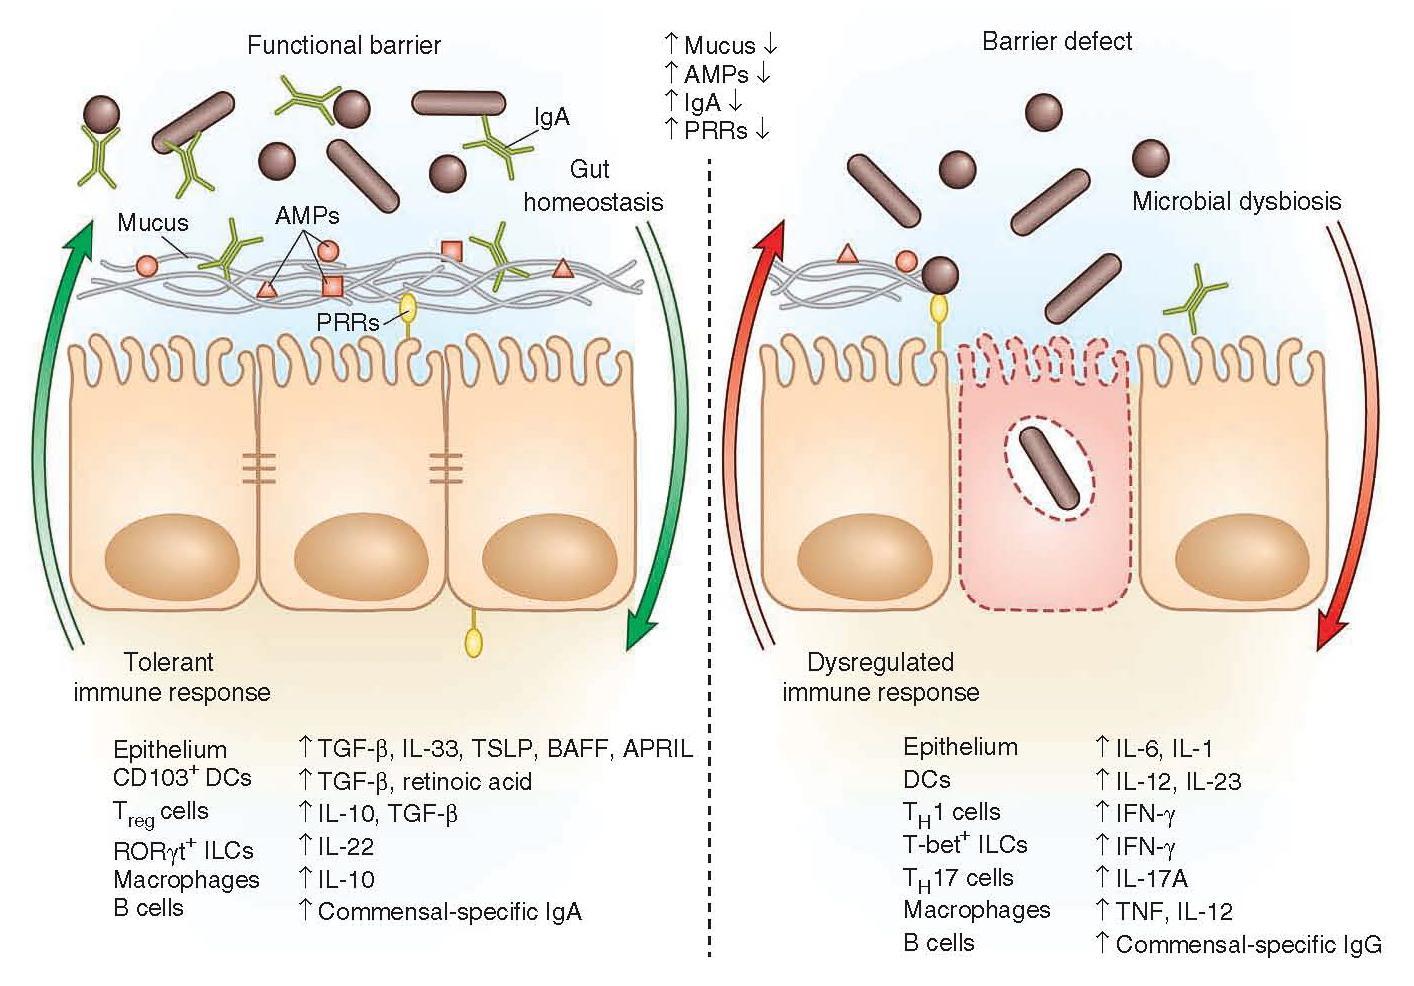 Immune factors in intestinal immune tract